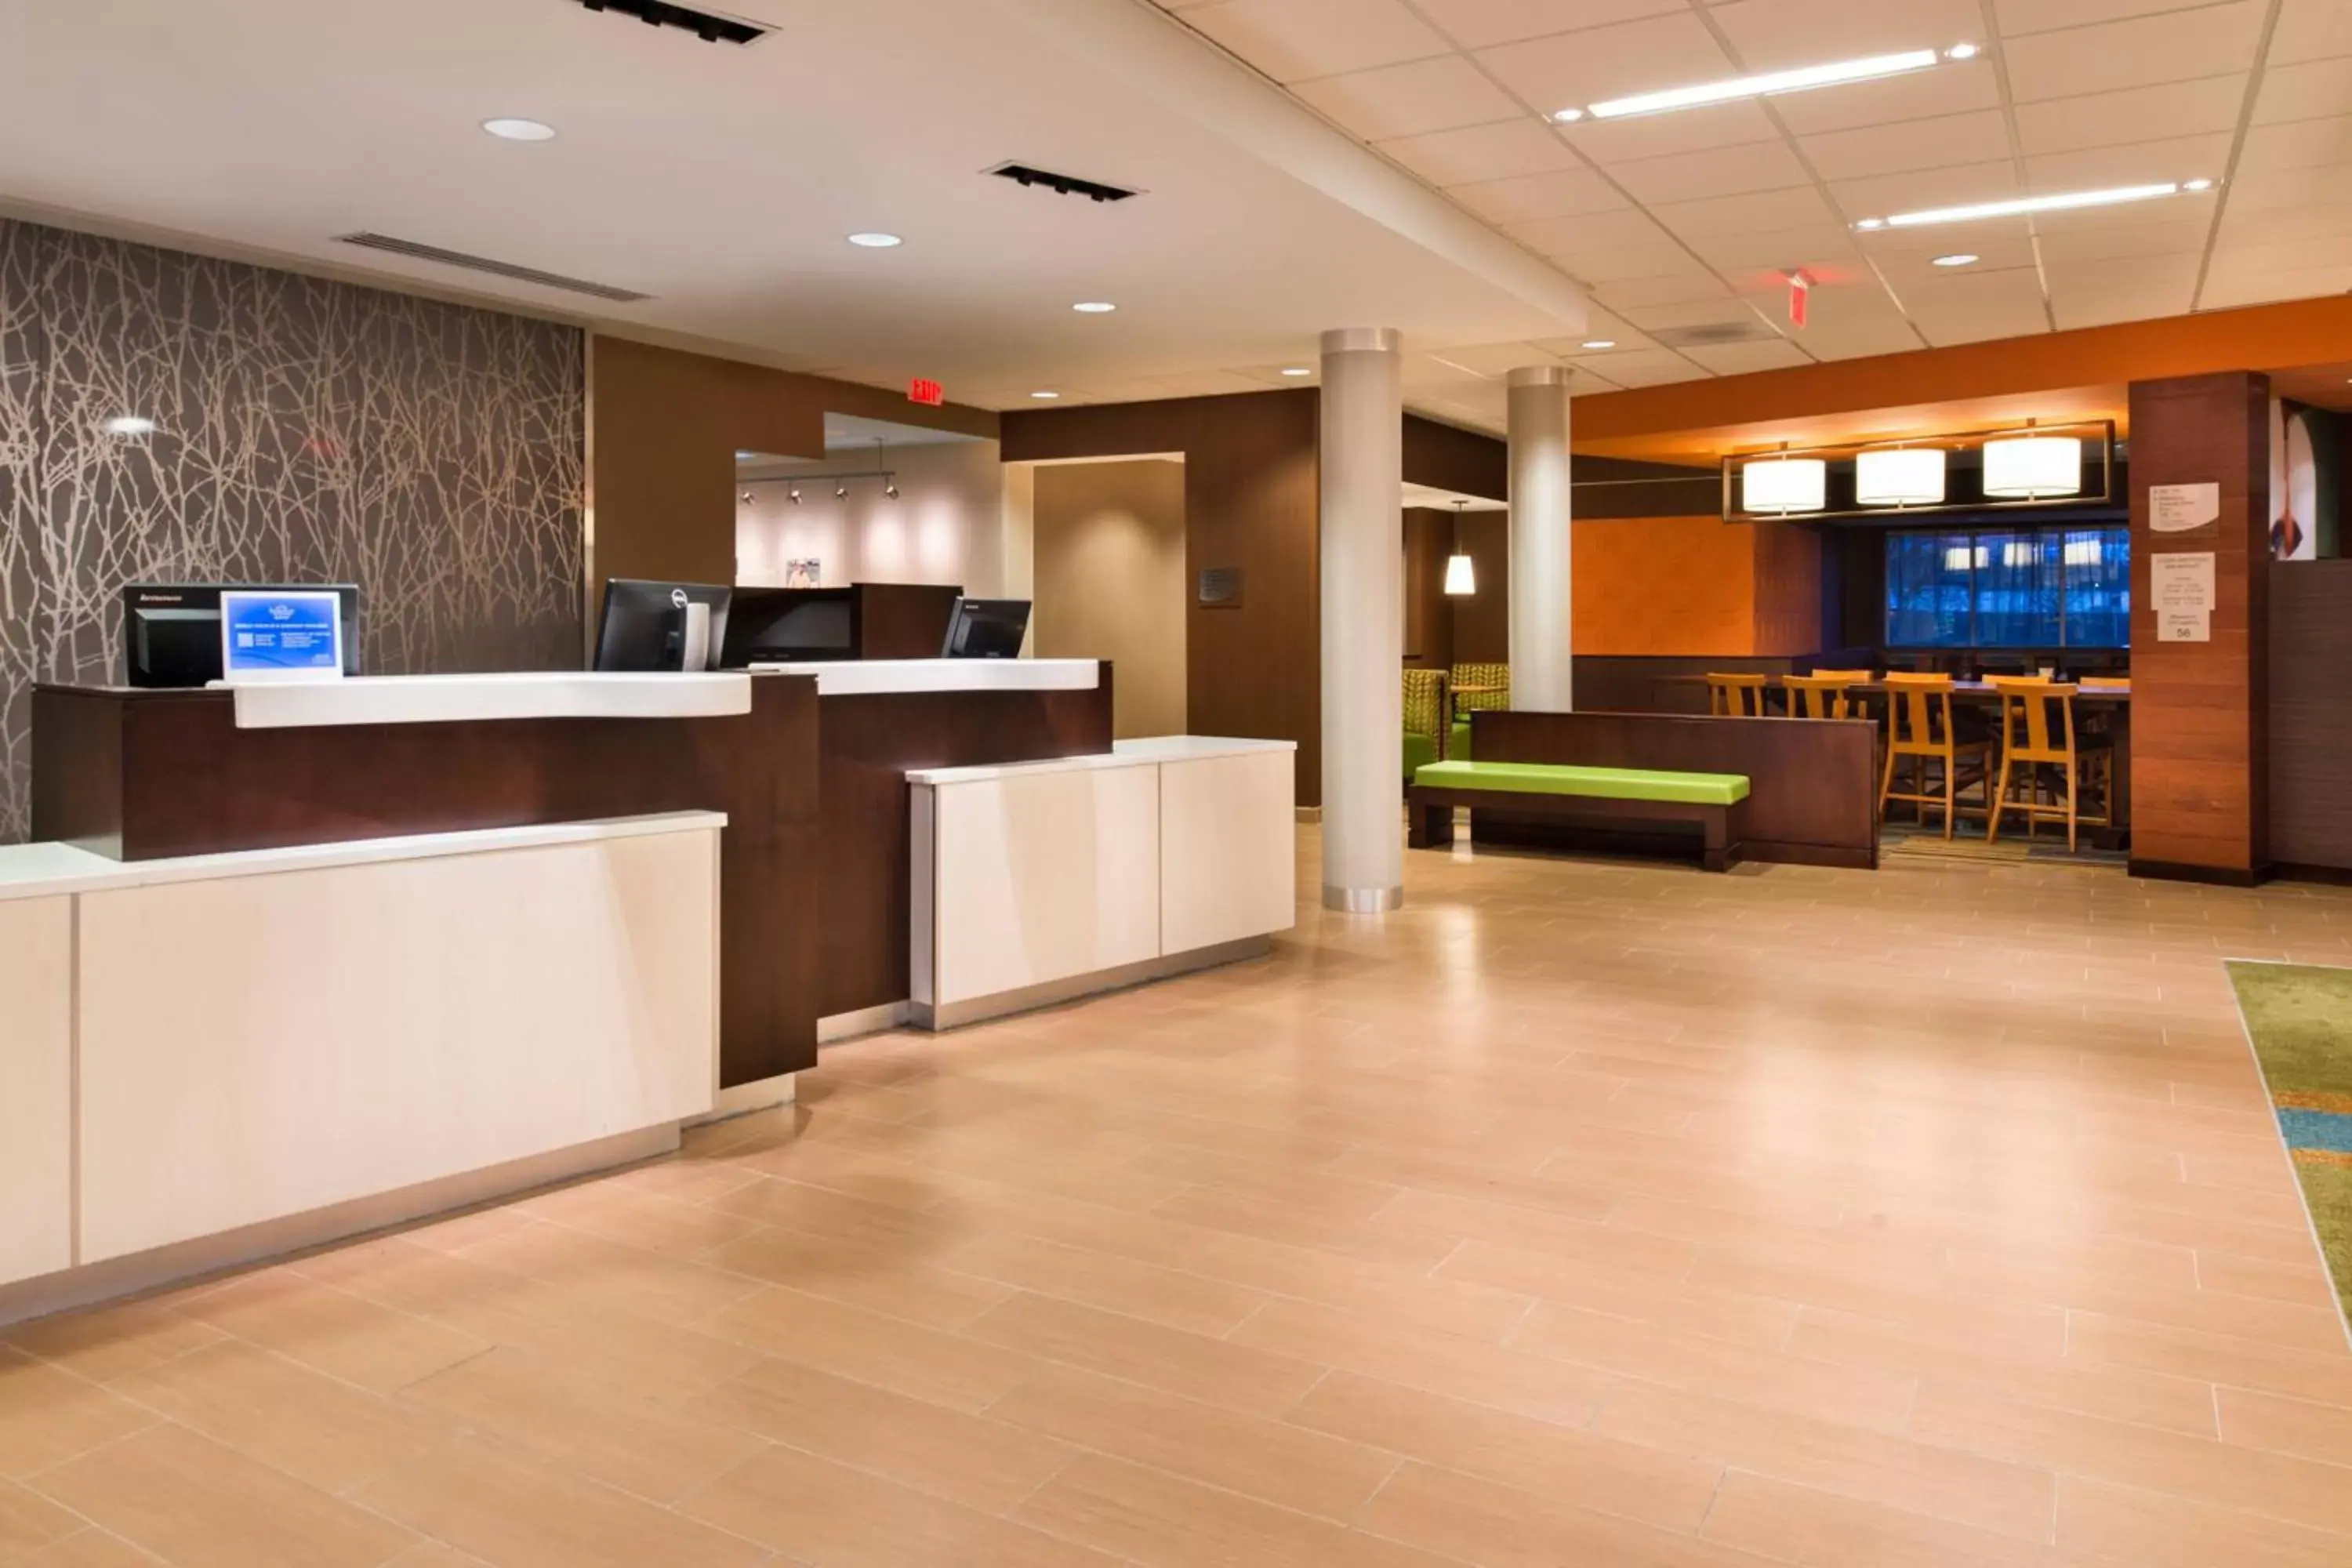 Lobby or reception, Lobby/Reception in Fairfield Inn & Suites by Marriott Utica